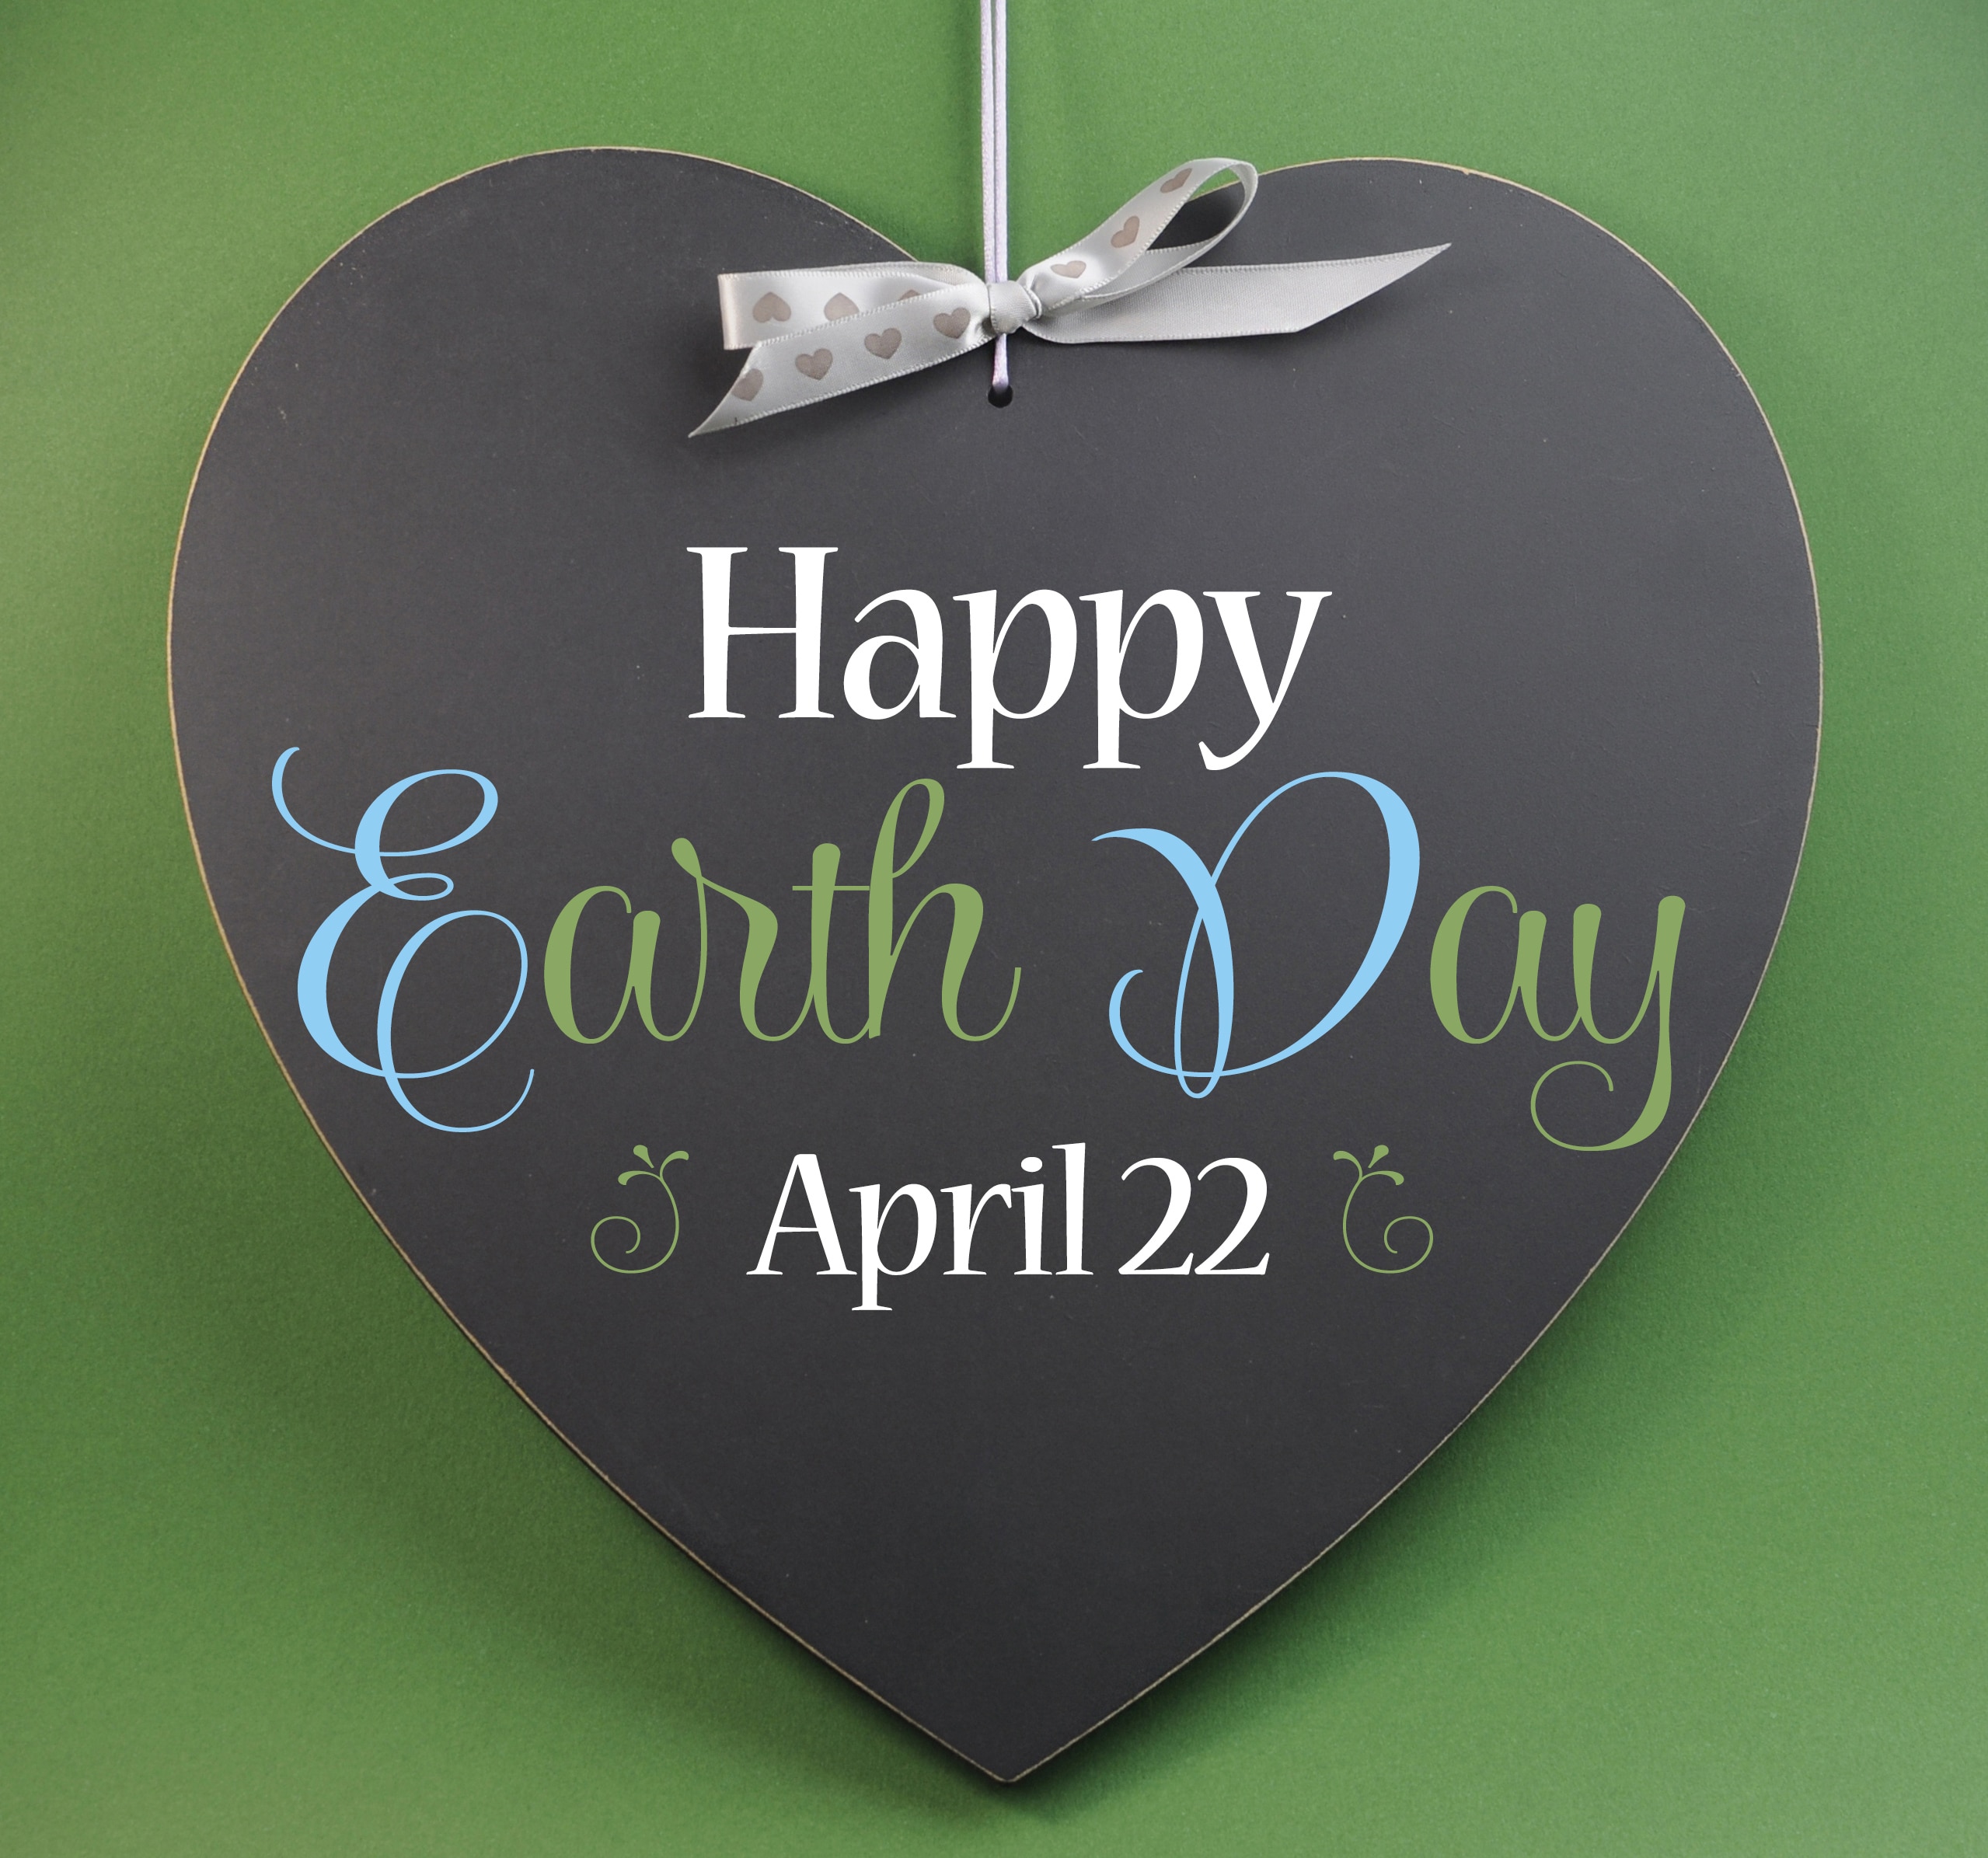 Earth Day Photos 